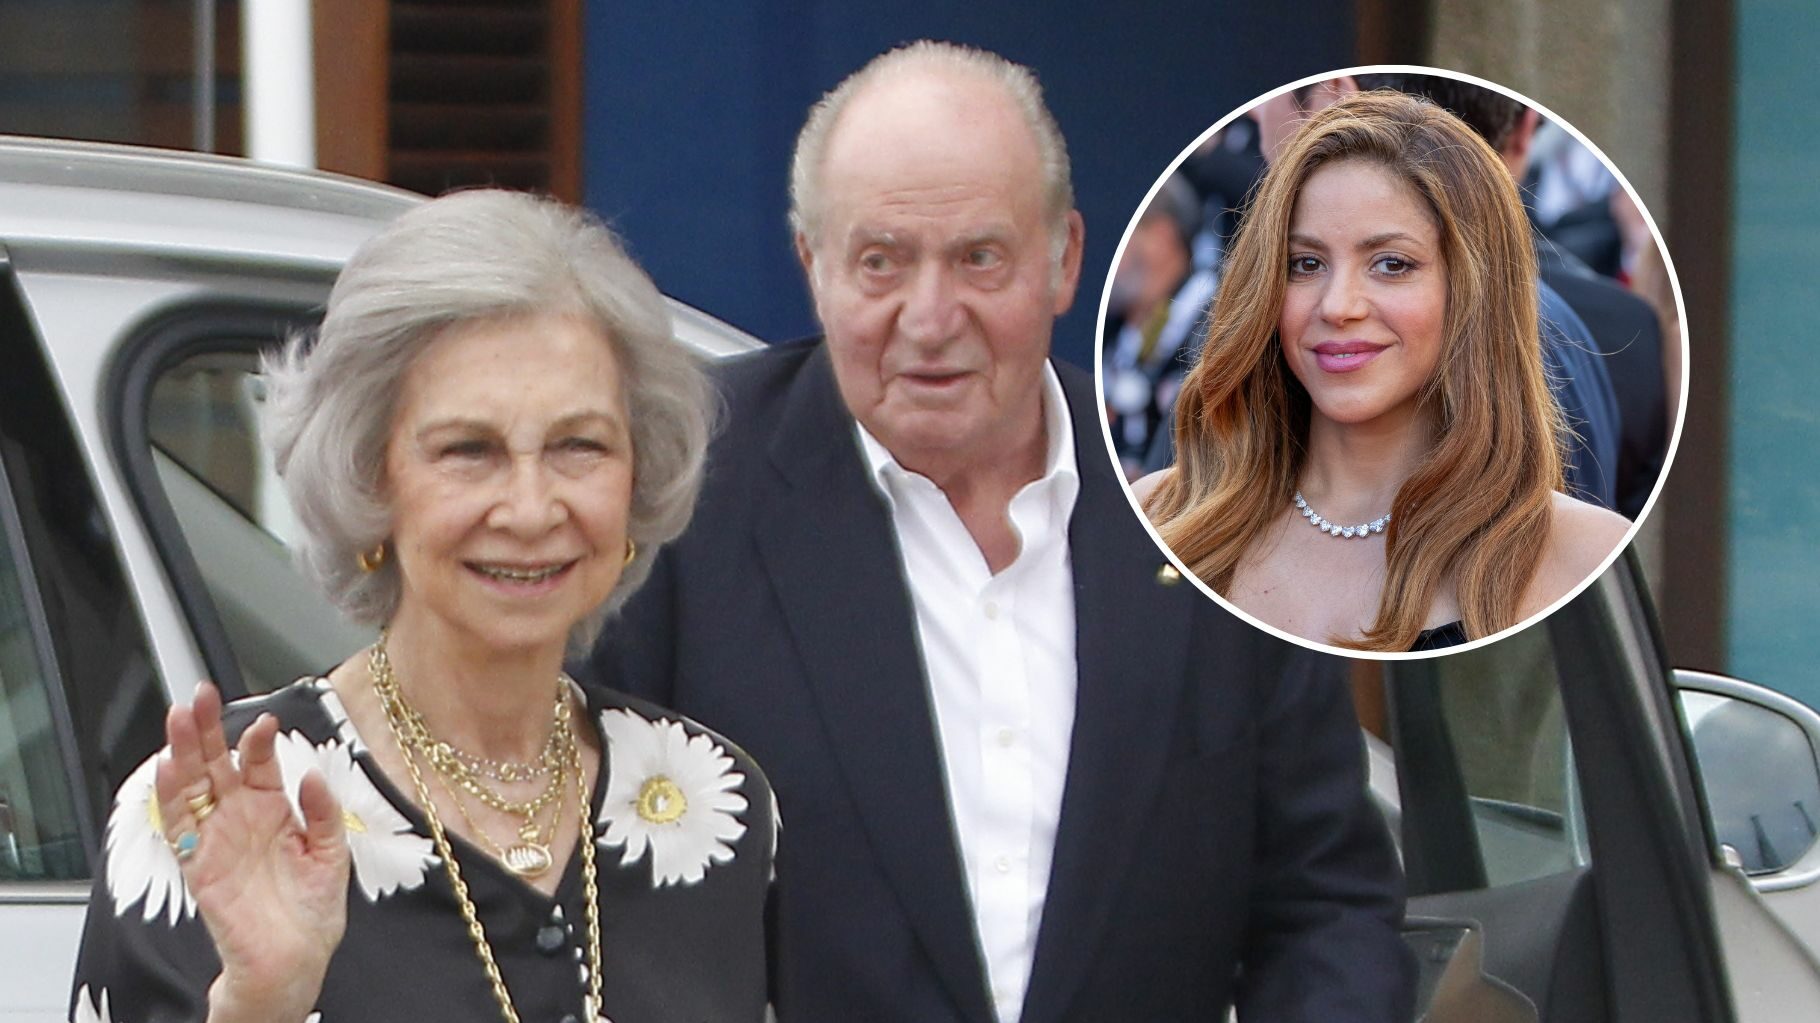 Hacen una canción con la reina Sofía a lo Shakira, lanzándole pullas al rey Juan Carlos, y el video se hace viral